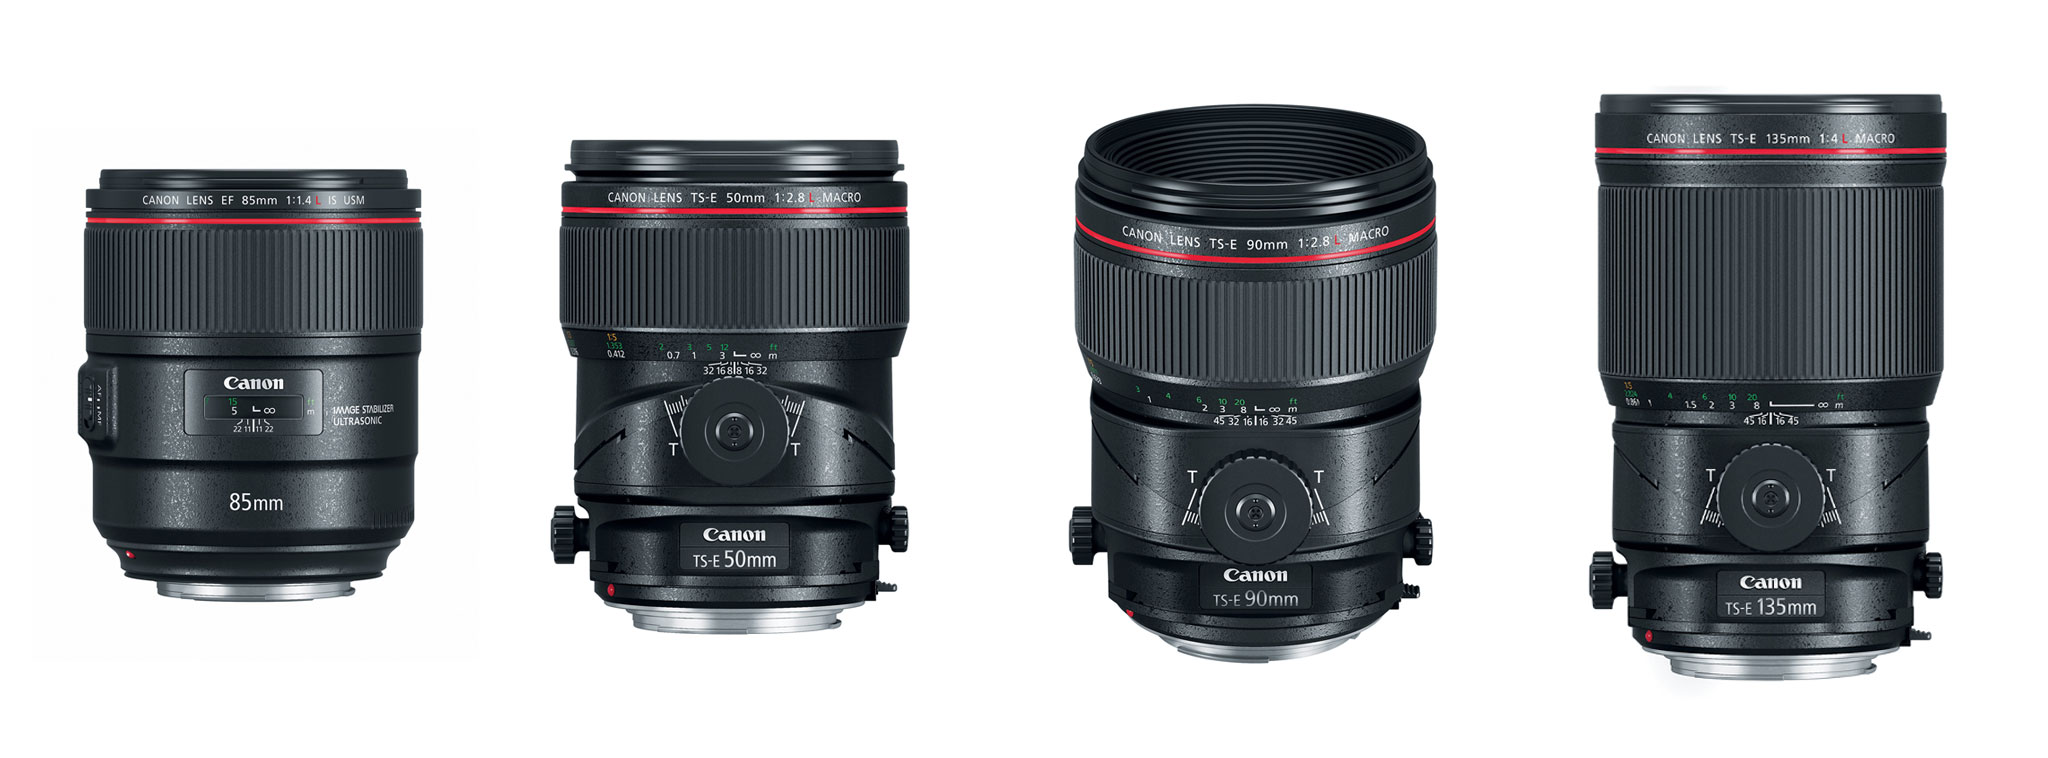 Canon giới thiệu lens chân dung EF 85mm F/1.4 L IS USM, 3 lens Tilf-Shift Macro và 1 đèn flash kép